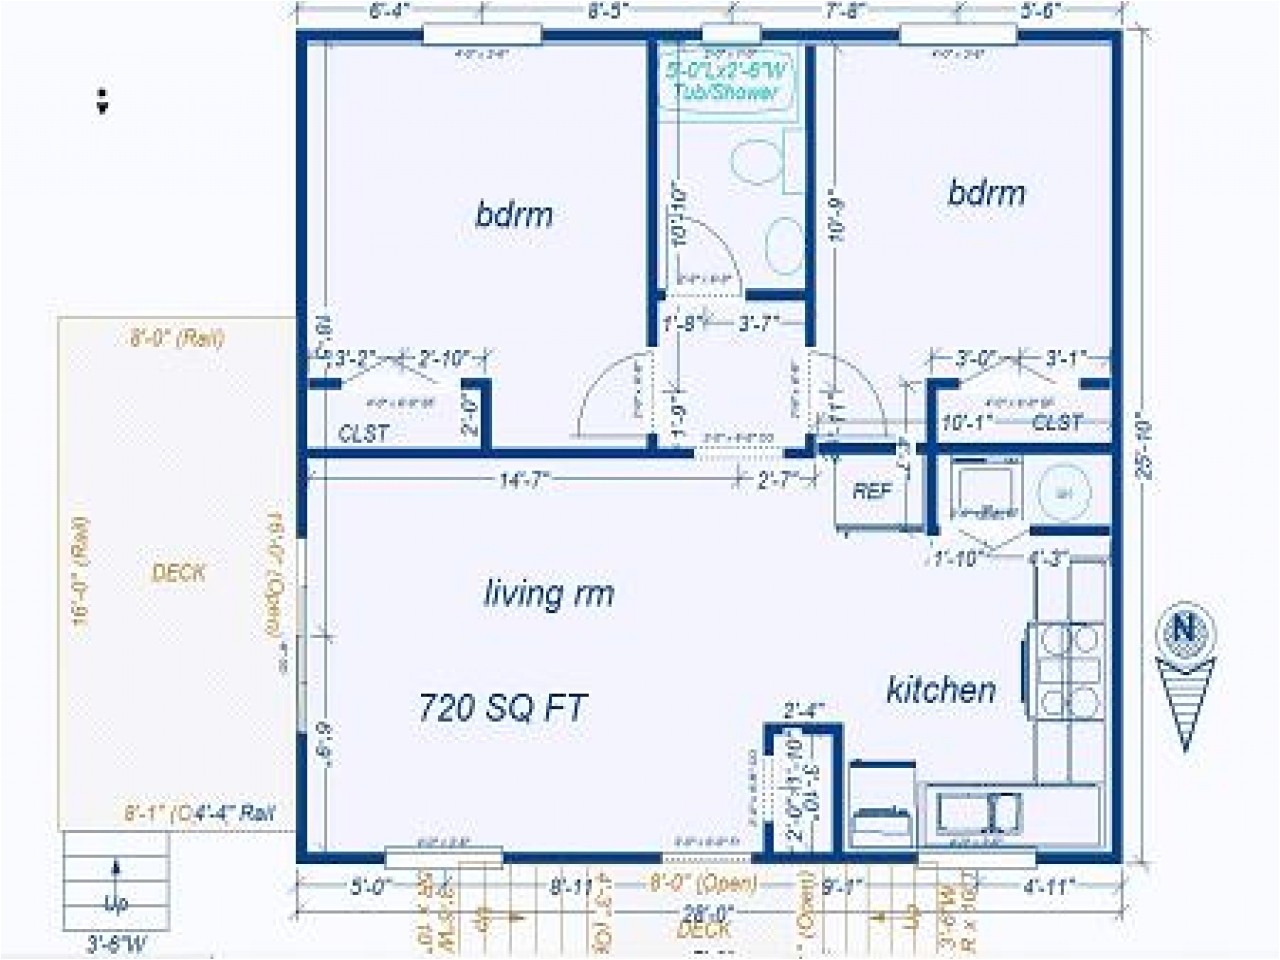 5f76a269f1837a25 simple small house floor plans small house floor plan blueprint